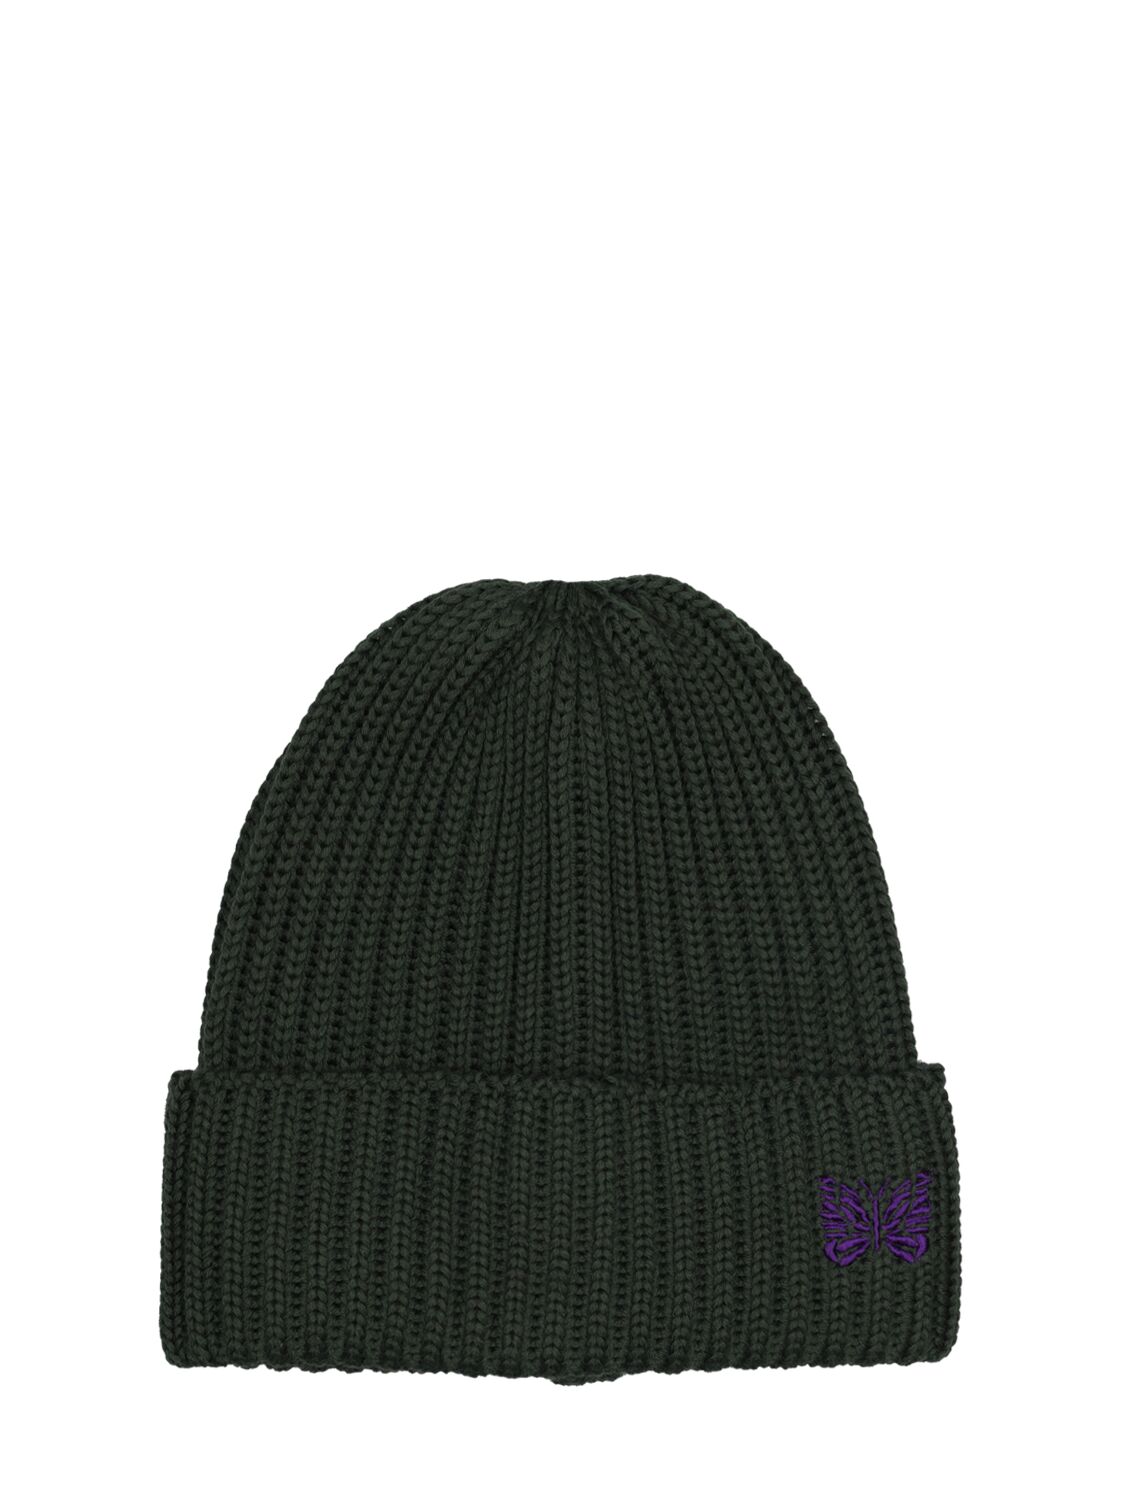 Image of Logo Wool Knit Hat